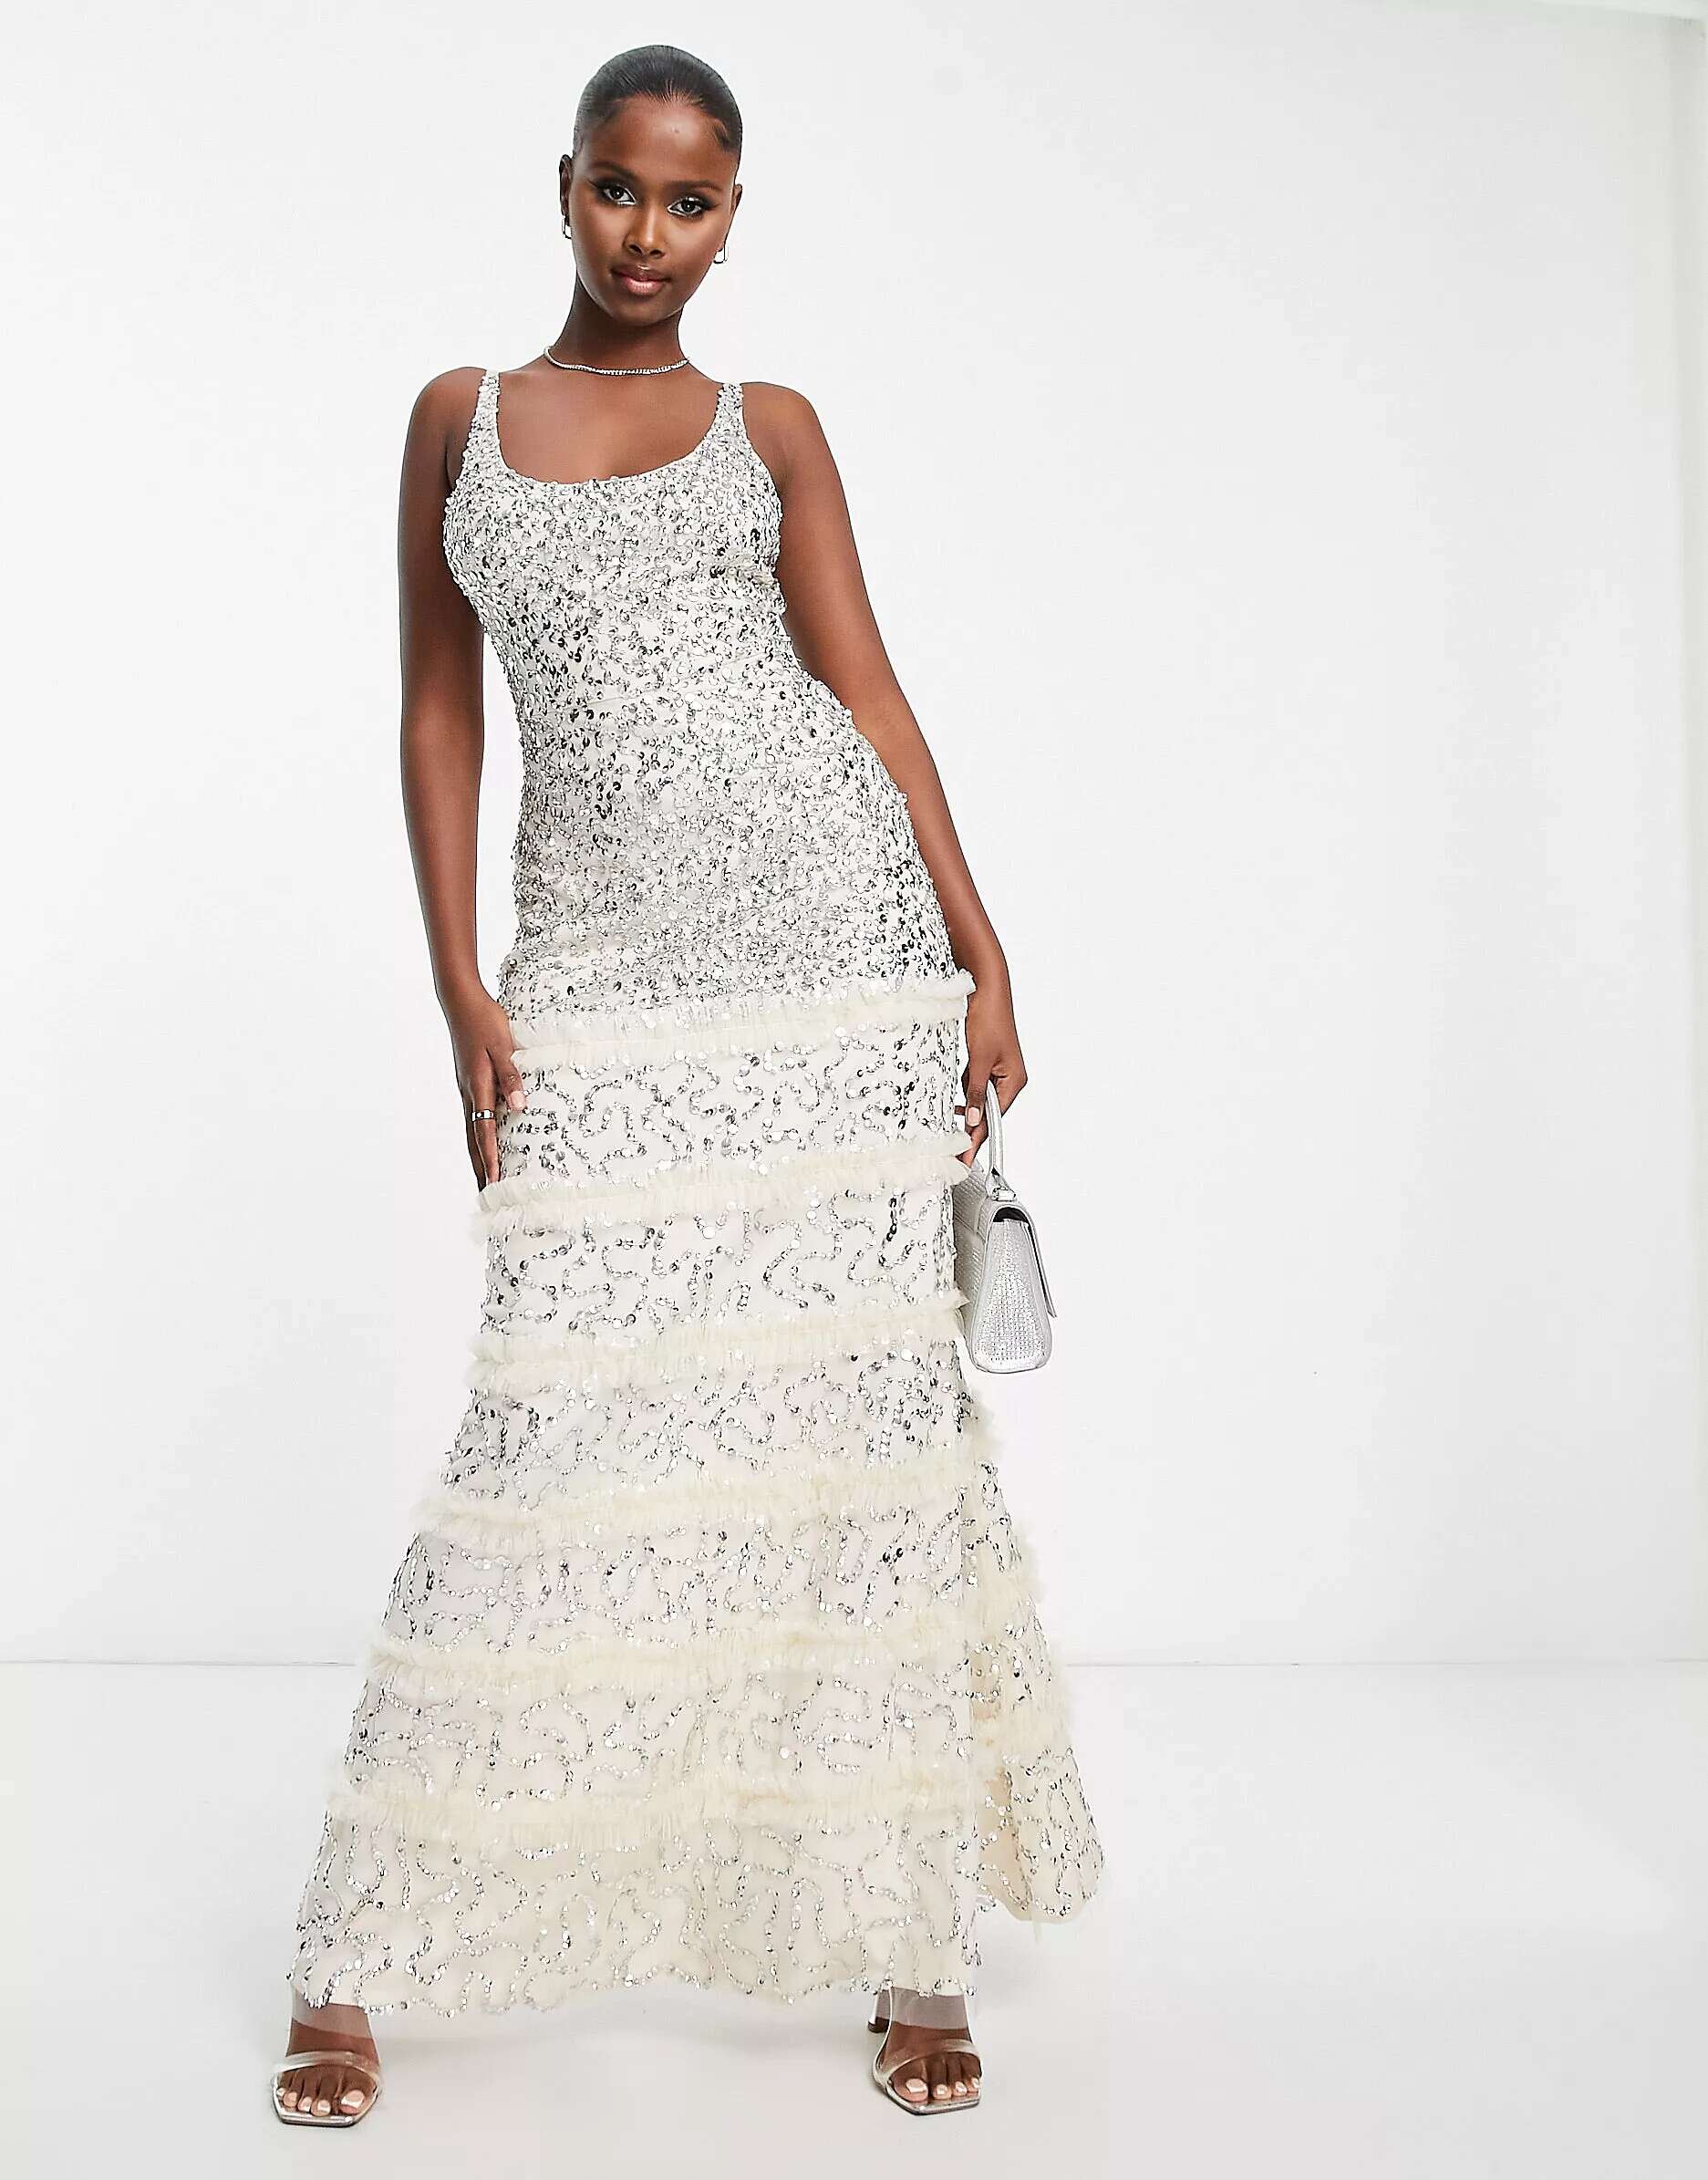 Эксклюзивное платье макси цвета шампанского с кружевом и бисером Lace & Beads